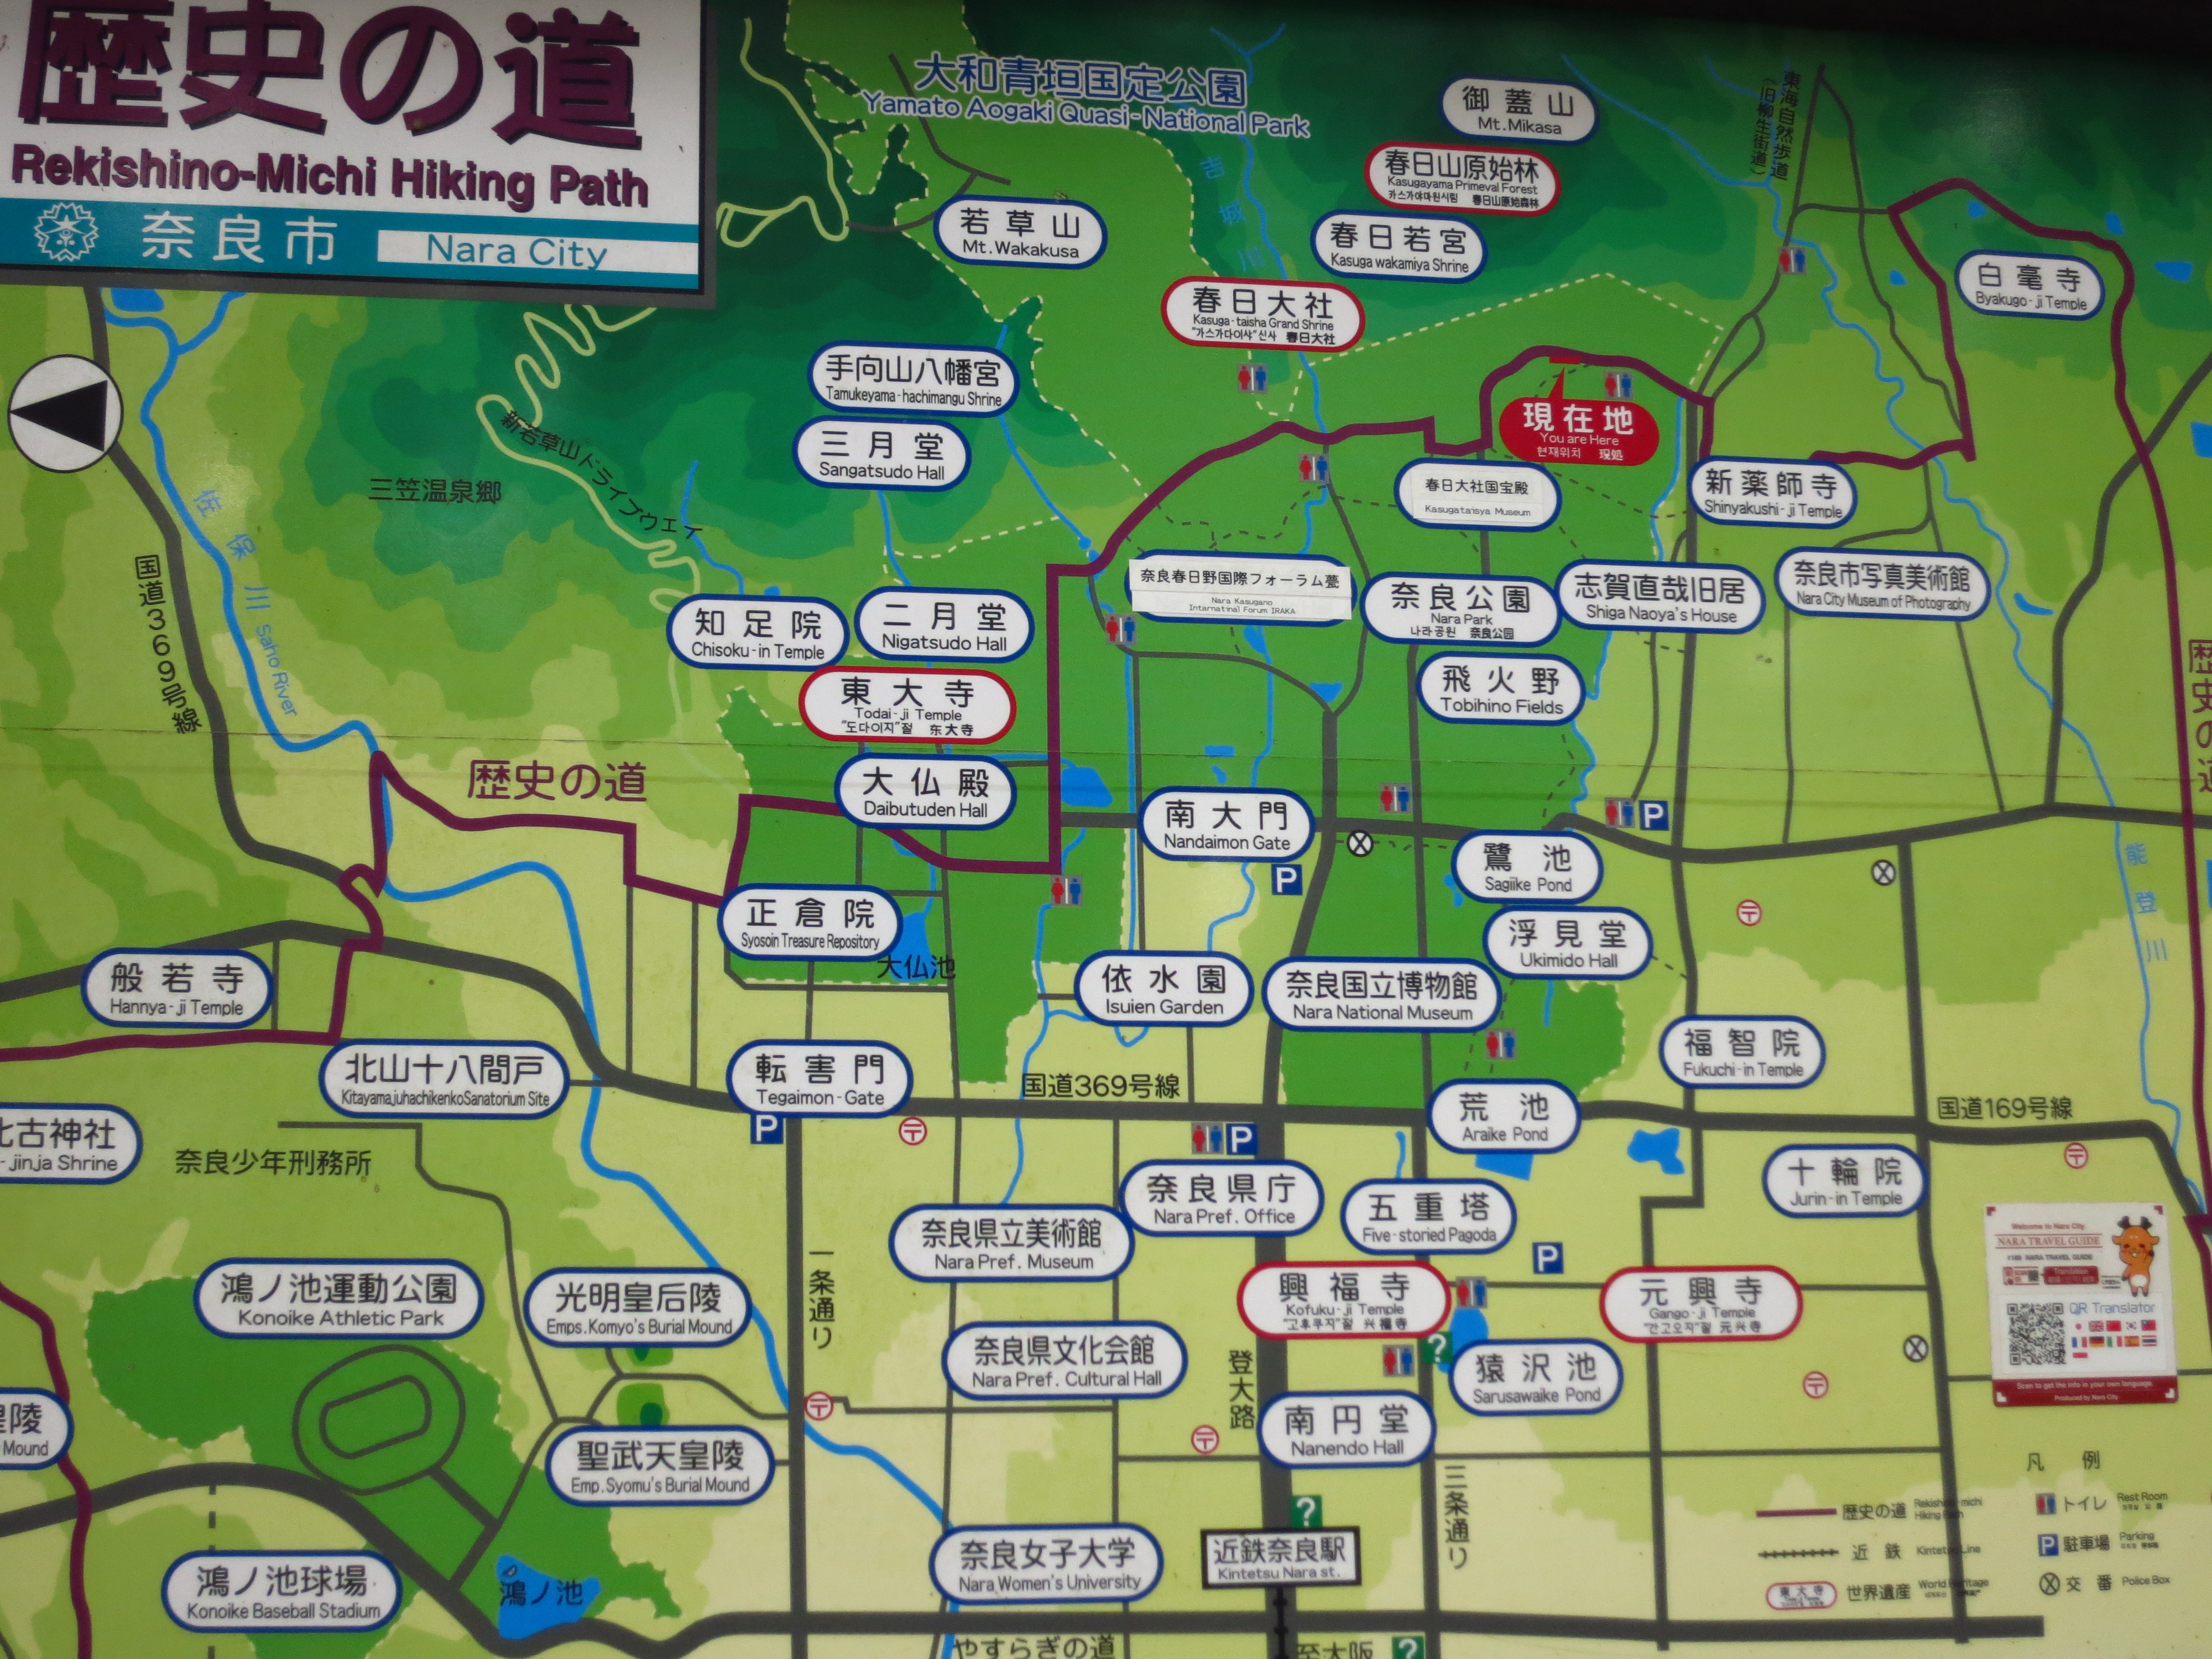 道の途中にあったマップ。奈良市にはまだまだ見どころが沢山ありますね。